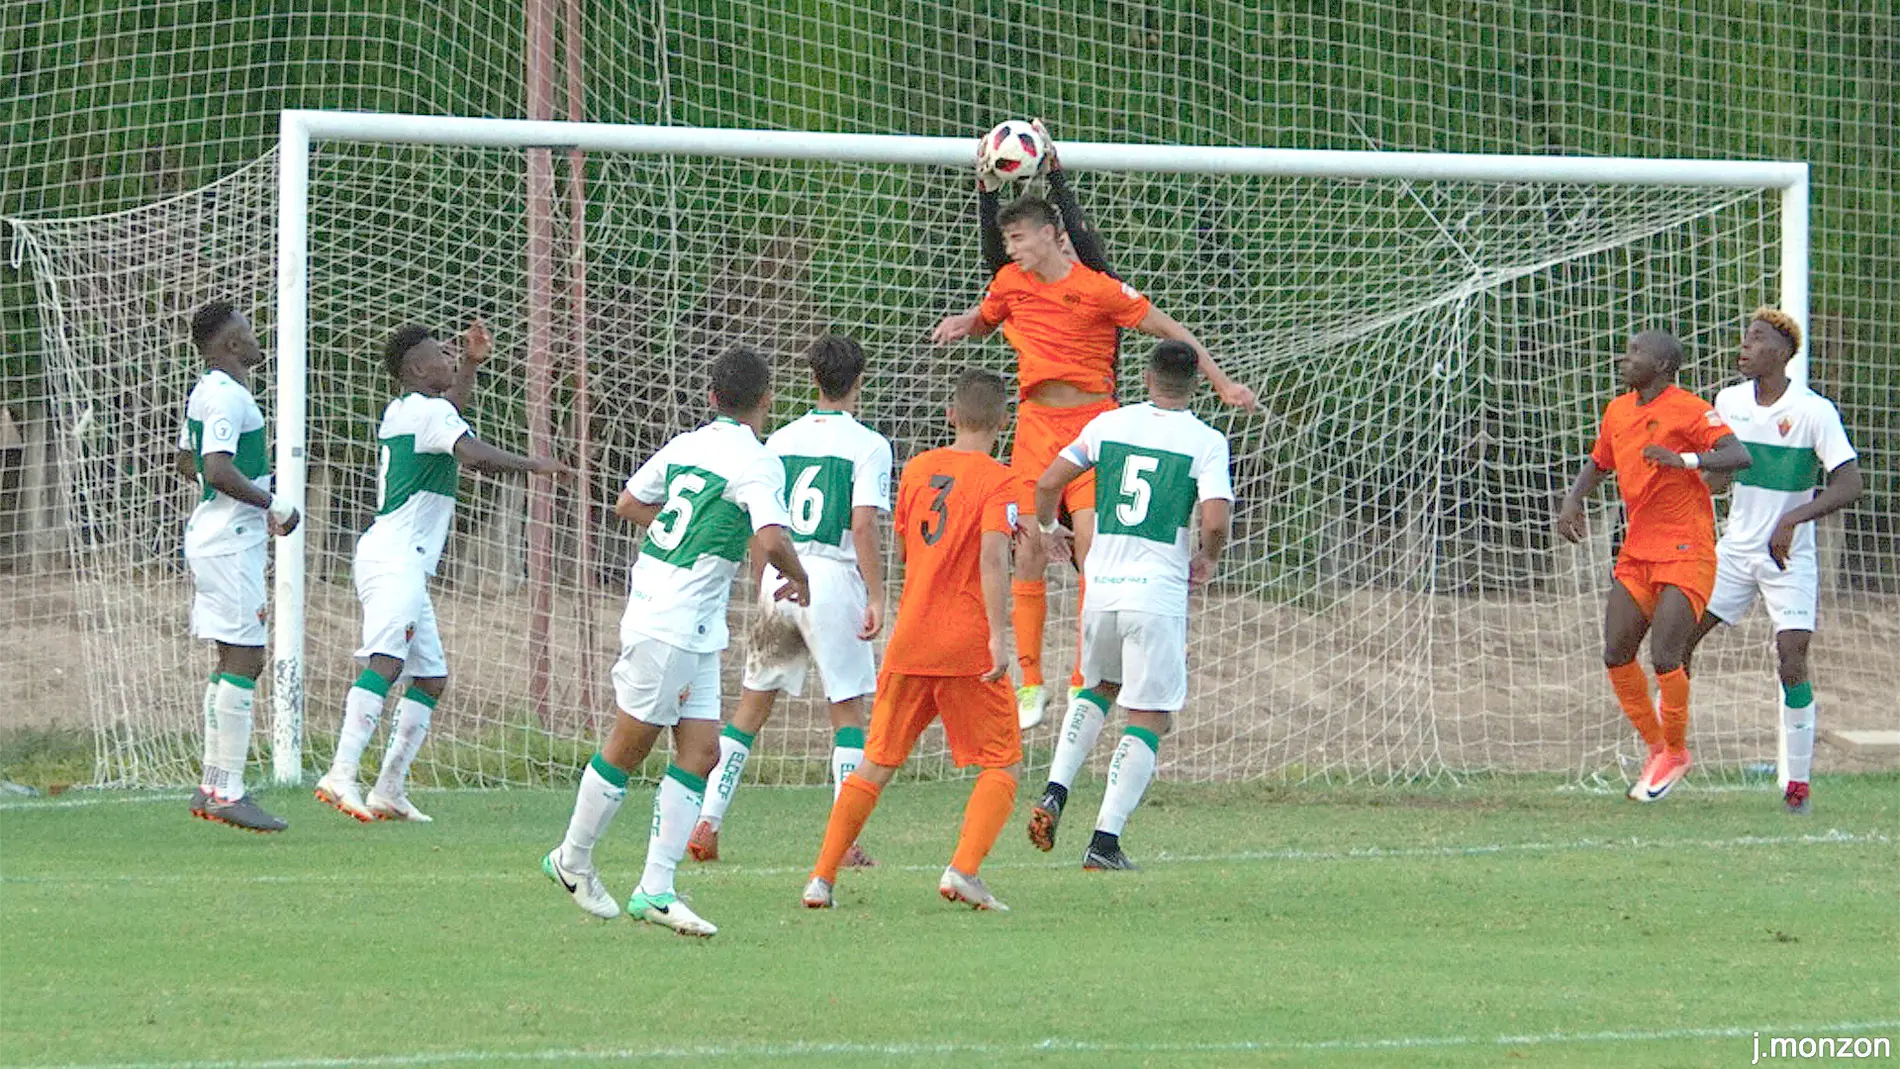 El portero Luis Castillo tuvo una buena actuación y fue una de las claves en la victoria del Ilicitano ante el Torre Levante (2-1).